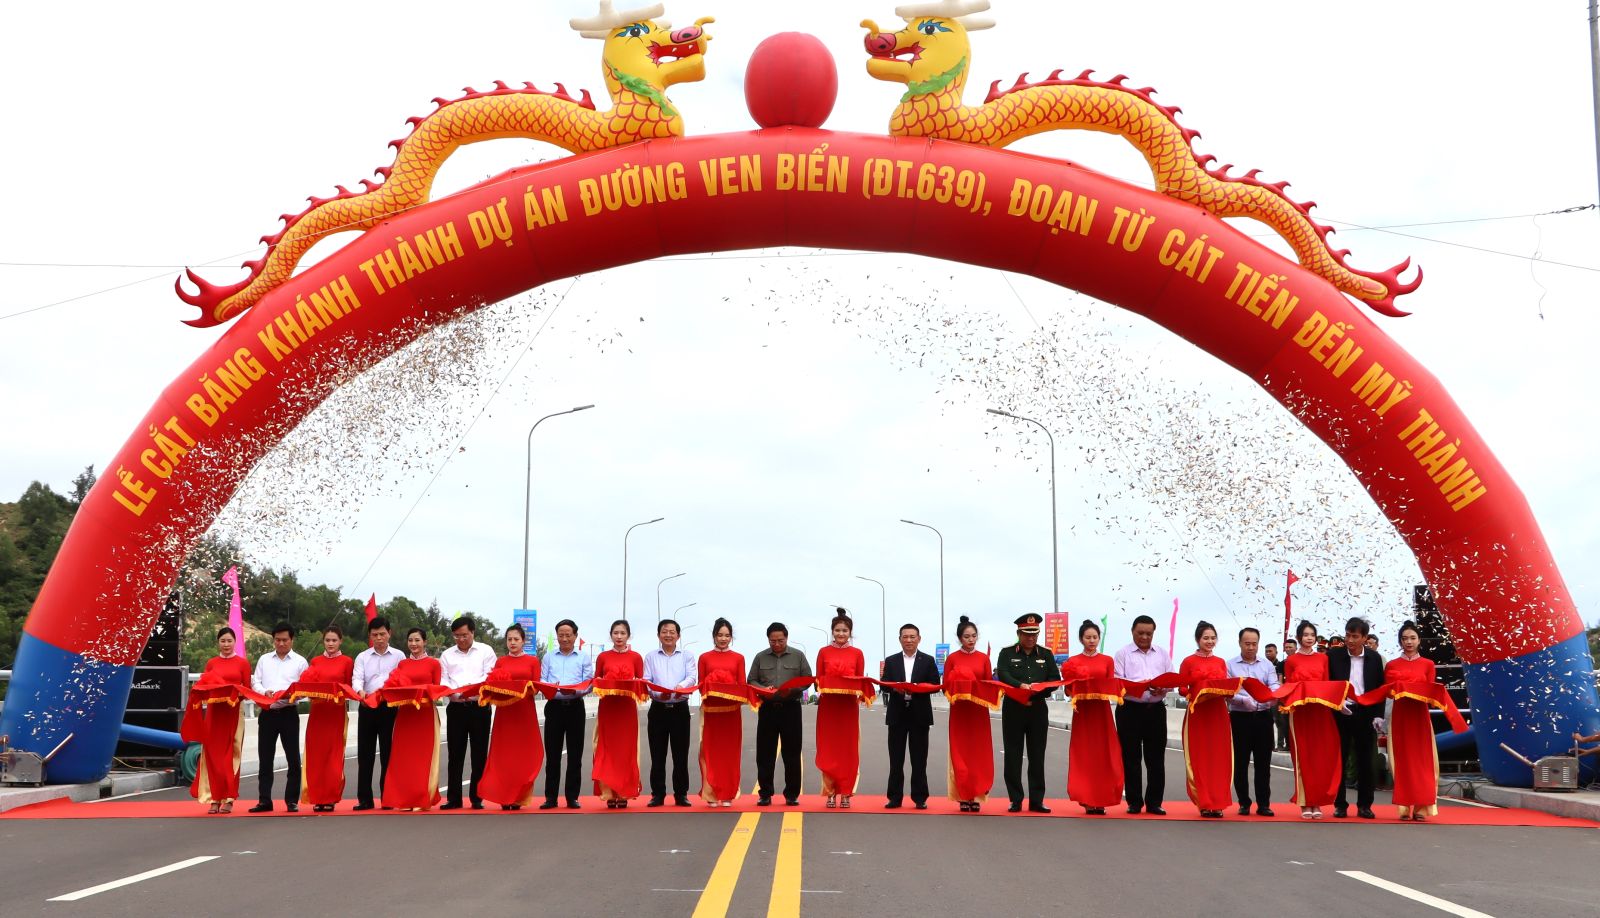 Thủ tướng Chính phủ cắt băng khánh thành tuyến đường ven biển Cát Tiến - Mỹ Thành, tỉnh Bình Định